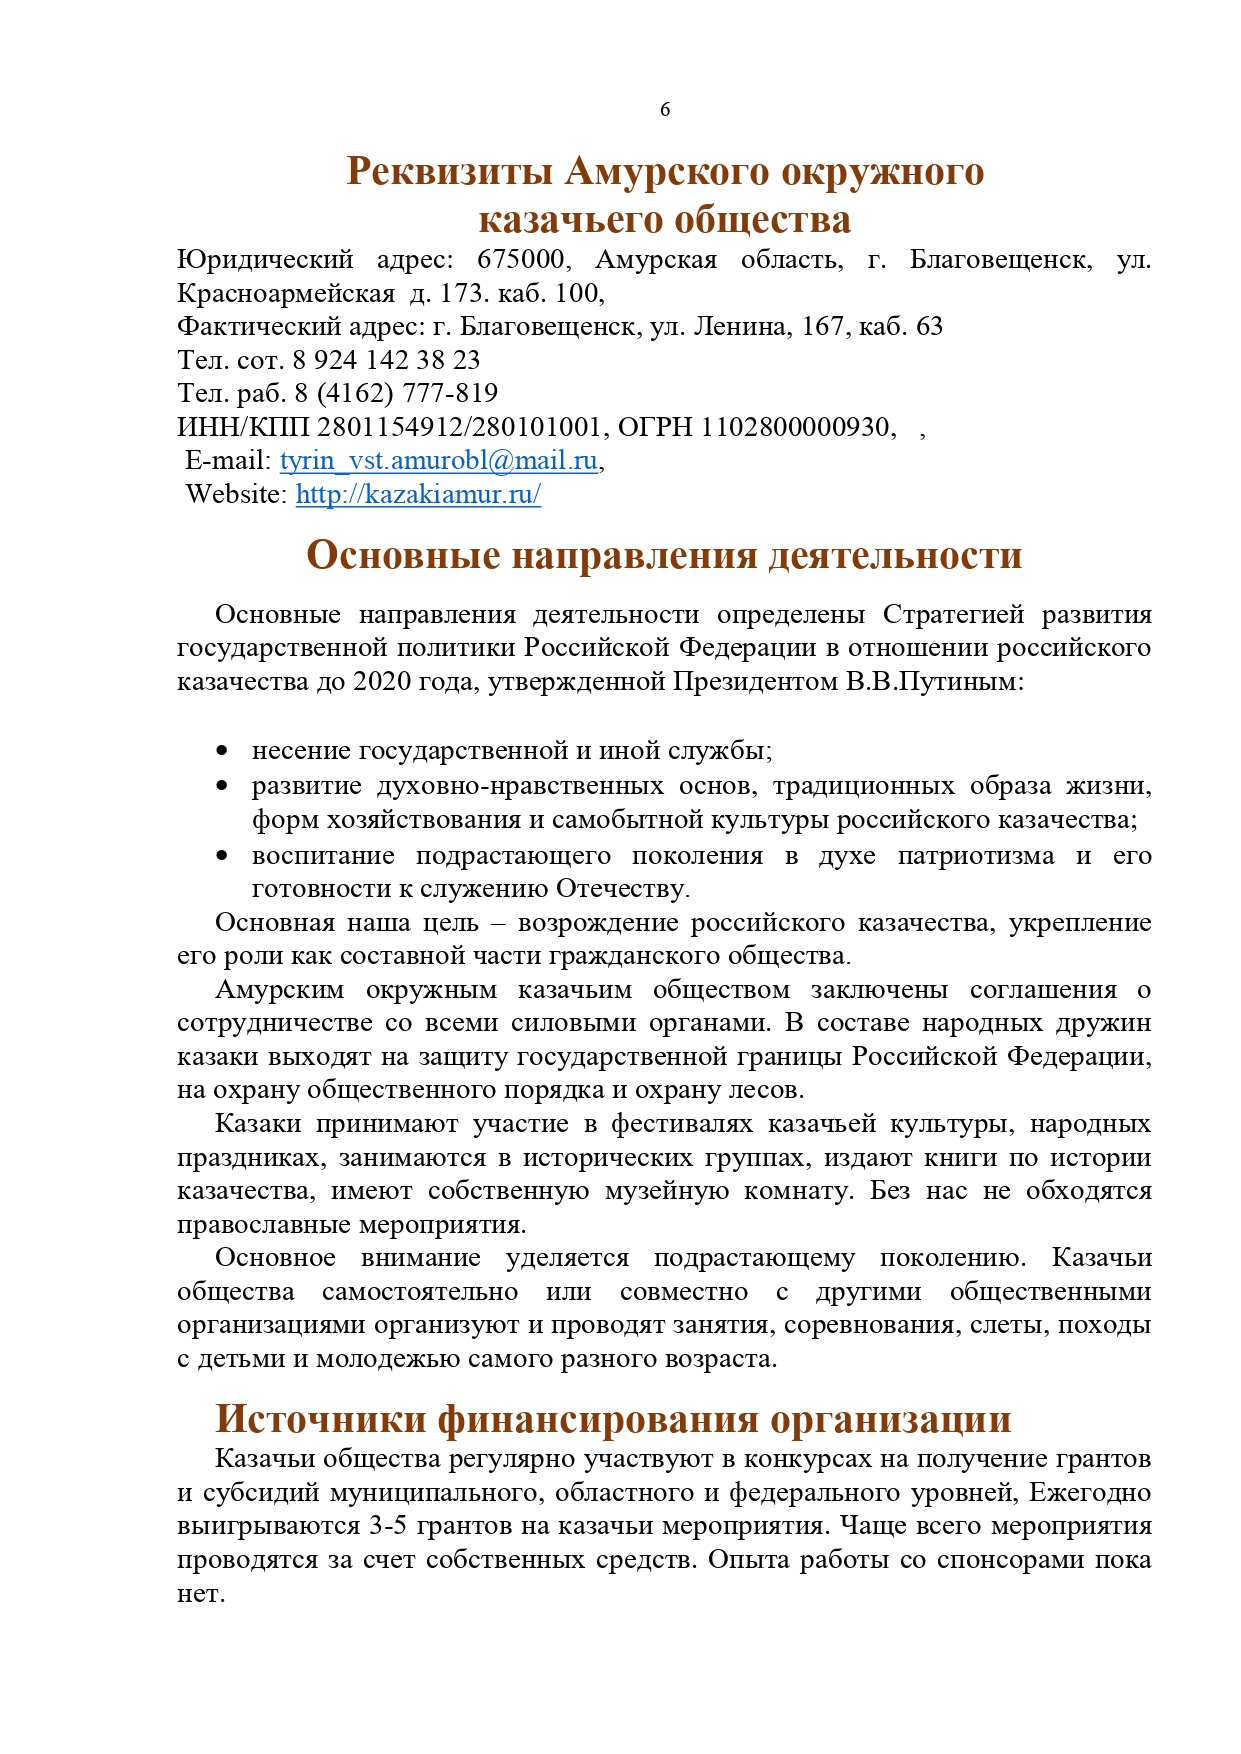 Публичный годовой отчет Амурского окружного казачьего общества за 2019 год Page 0006